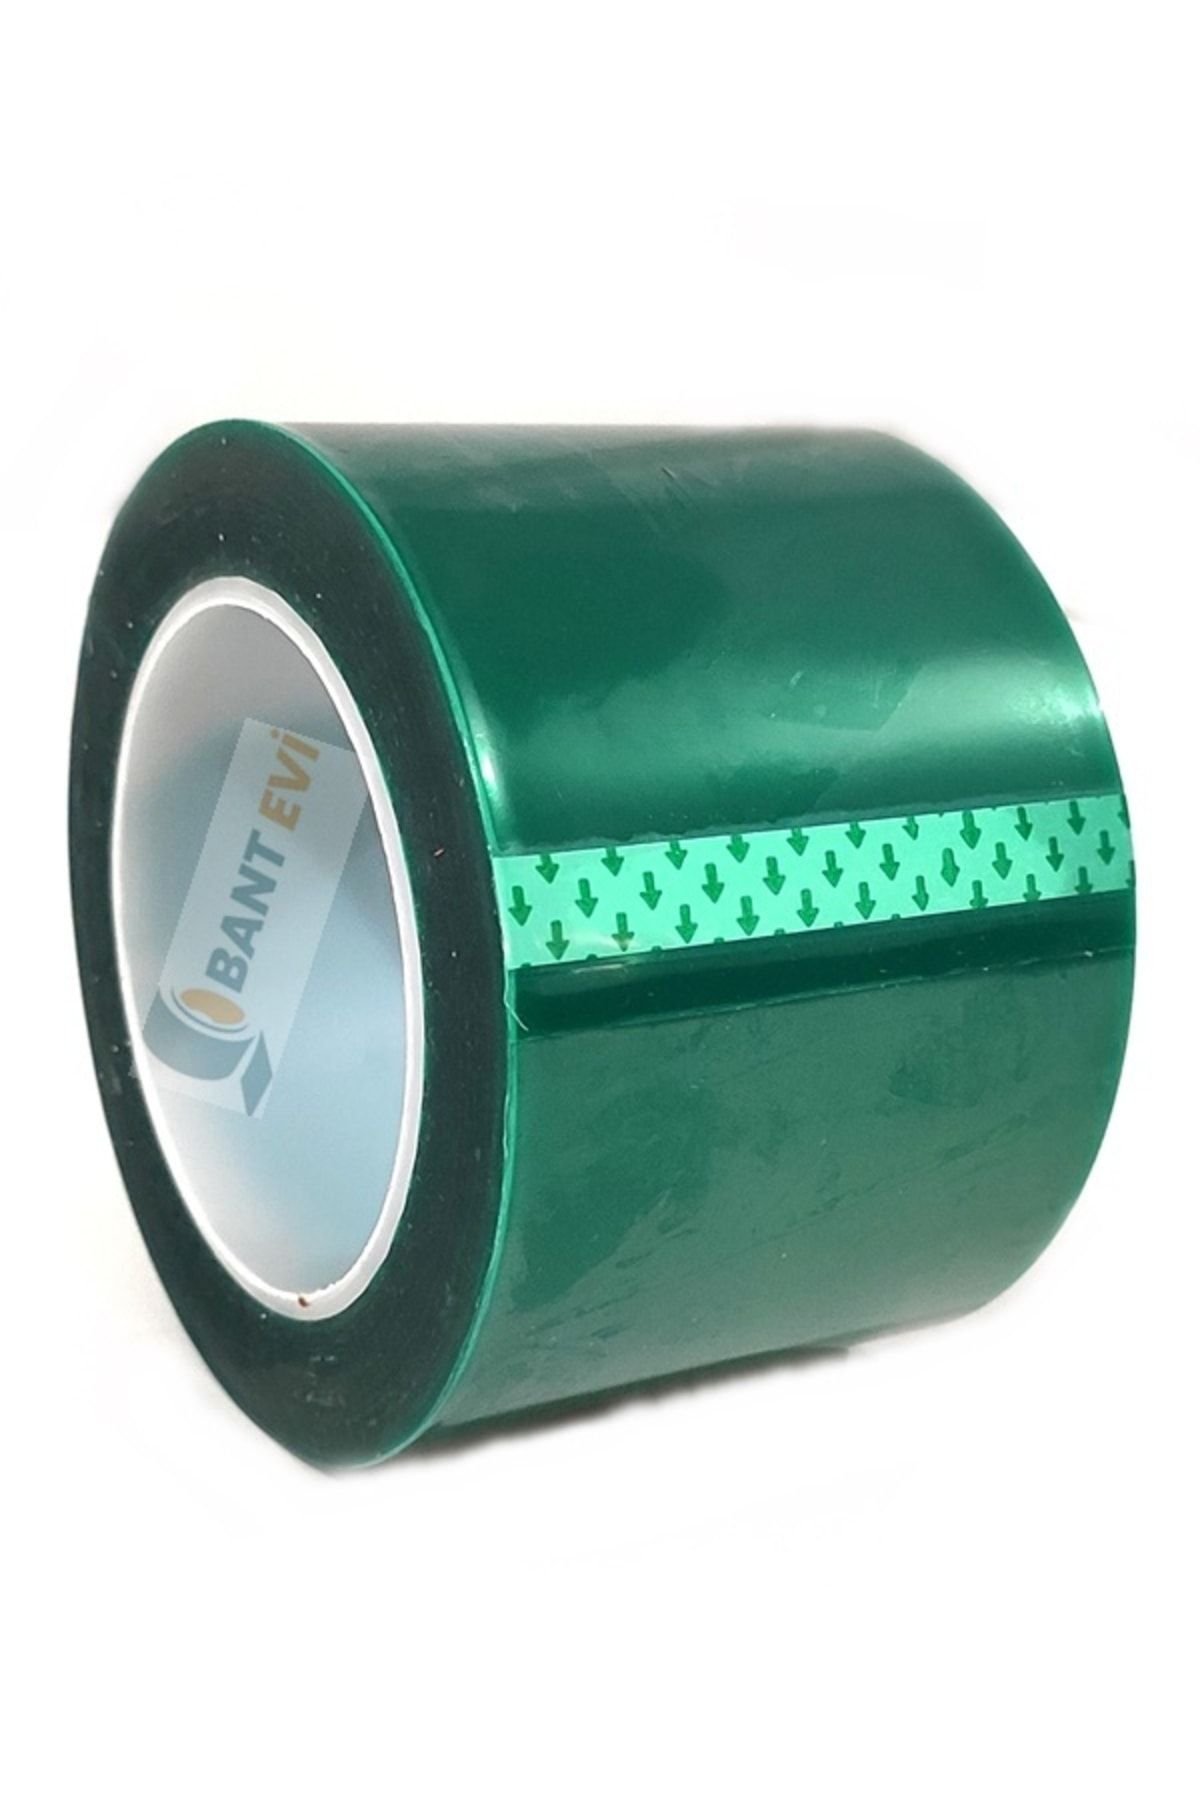 BANT EVİ Yüksek Isıya Dayanıklı Maskeleme Bandı 50mm X 66metre Yeşil Polyester 5cm